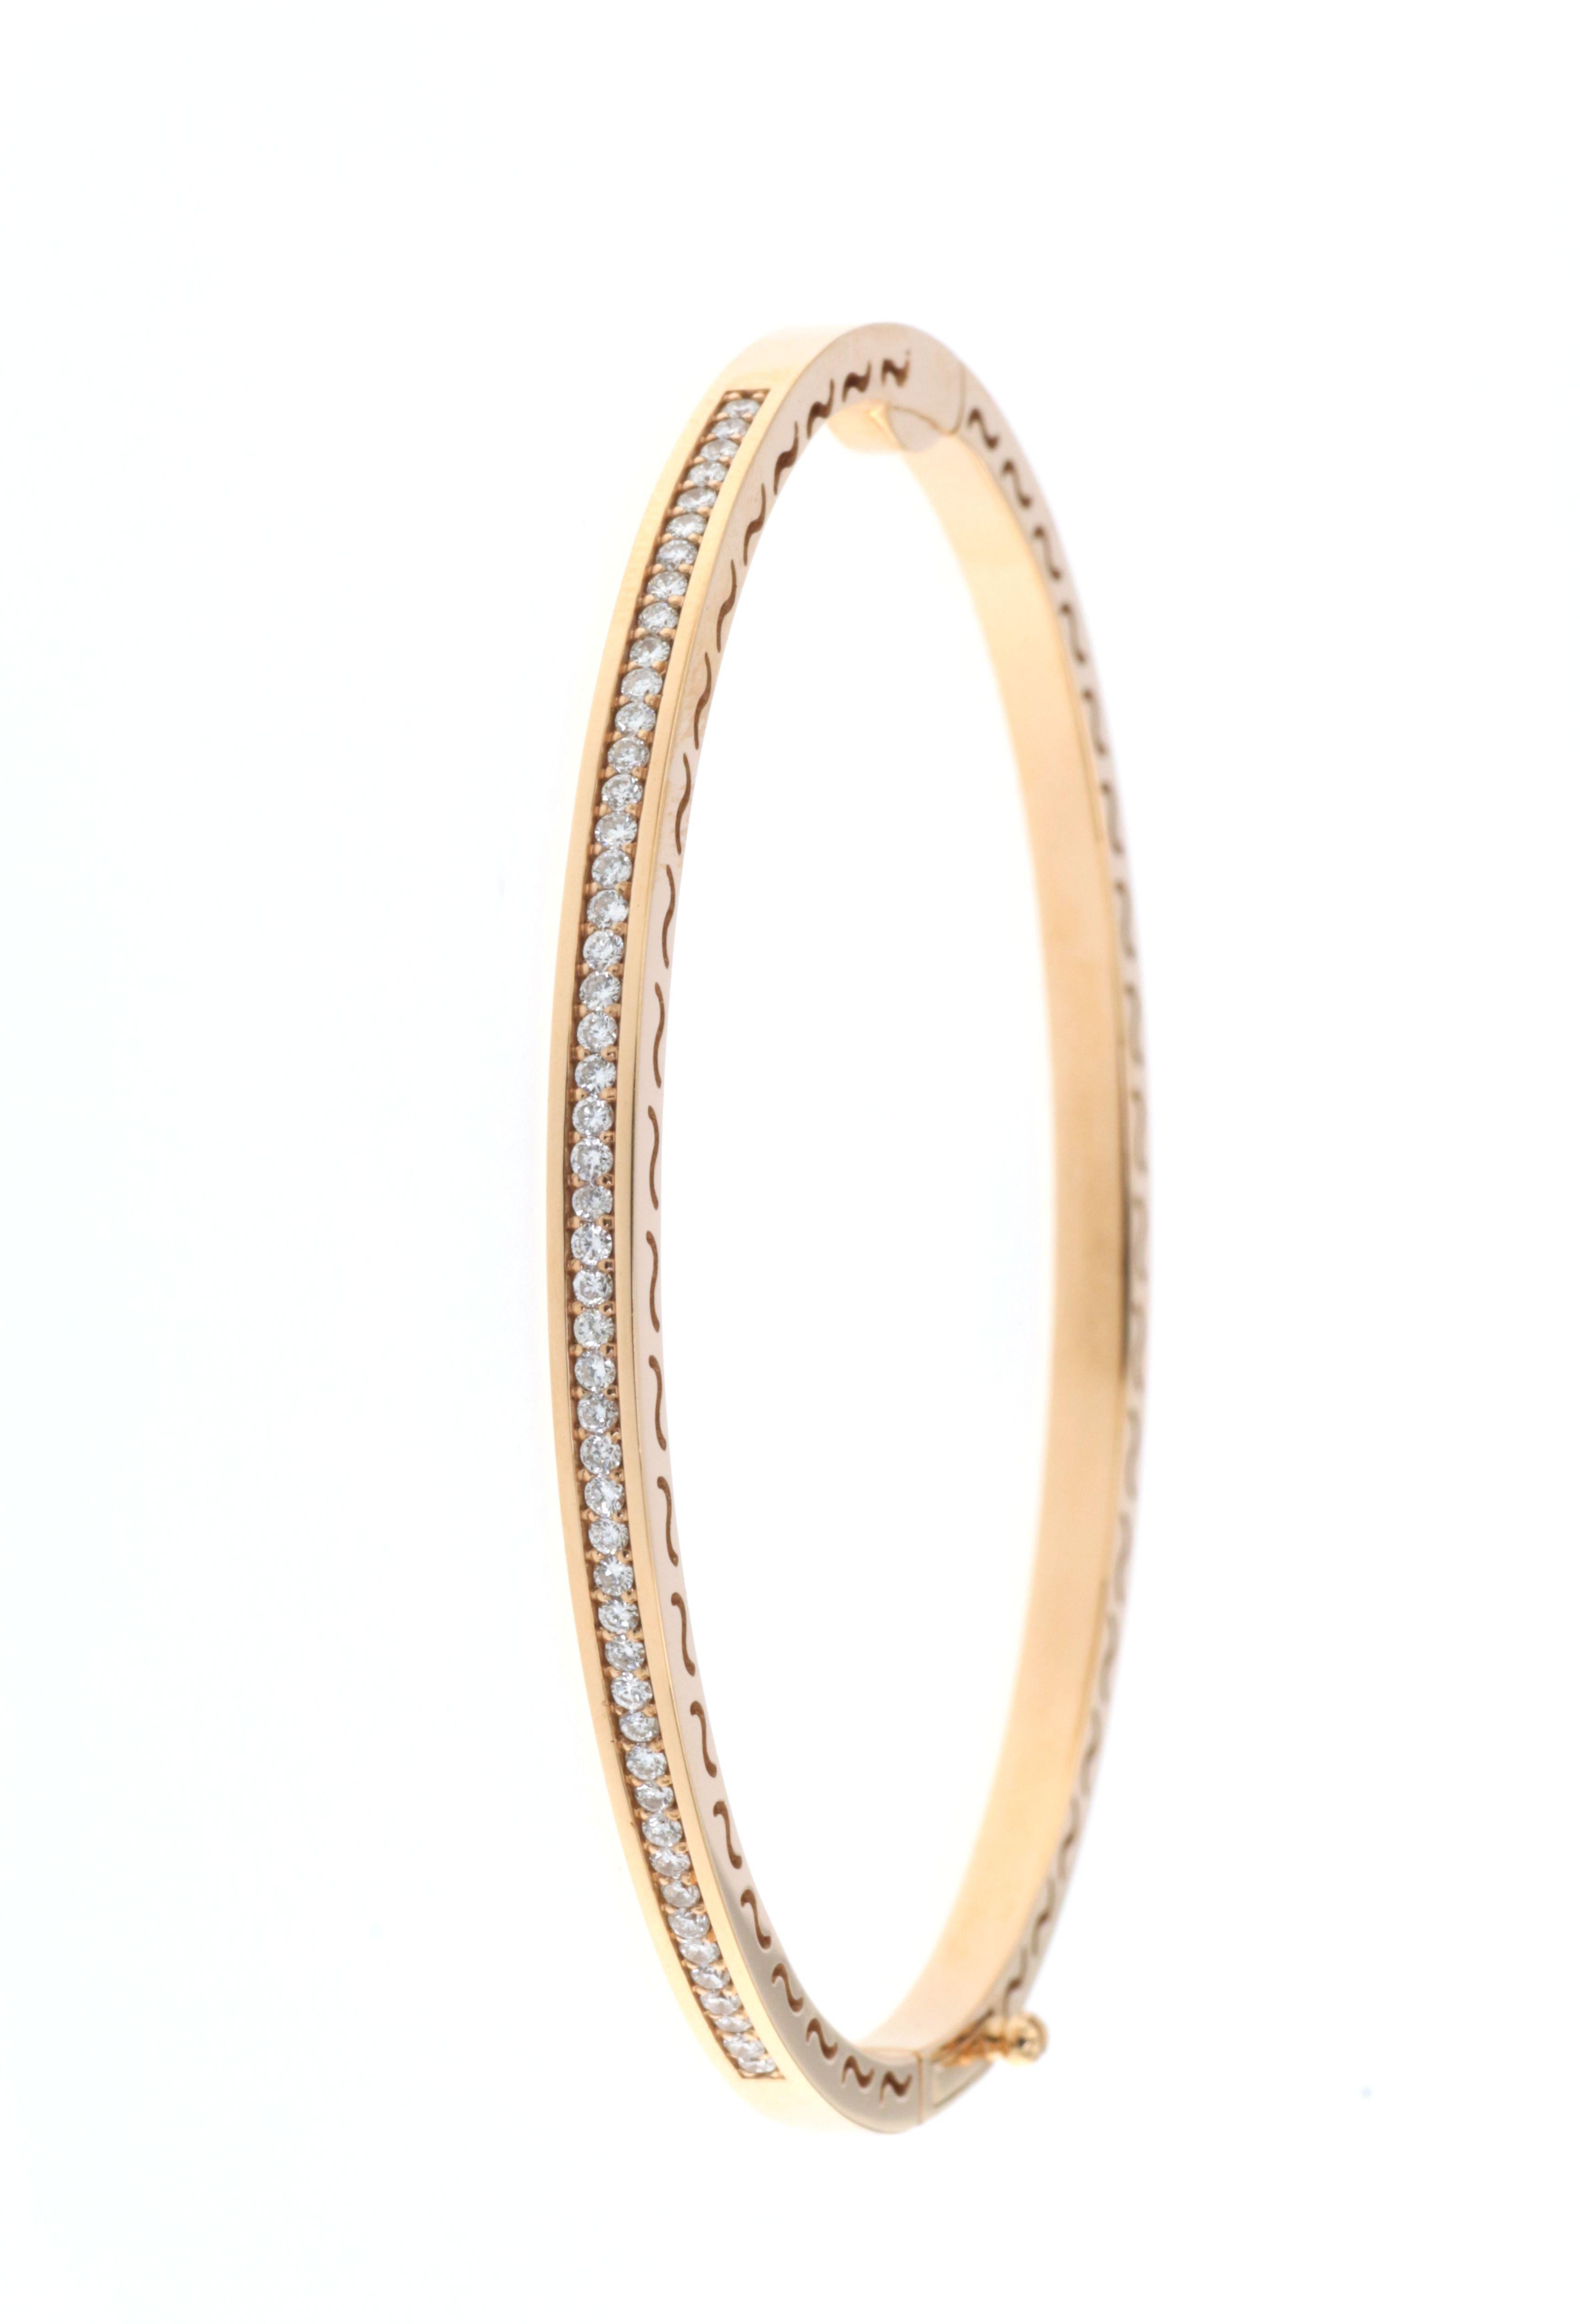 Elaborada con el mejor oro rosa de 18 quilates, esta pulsera brazalete es un estudio de elegancia y sencillez. Presenta una línea continua de diamantes redondos, con un peso total de 0,55 quilates. Los diamantes están cuidadosamente engastados para